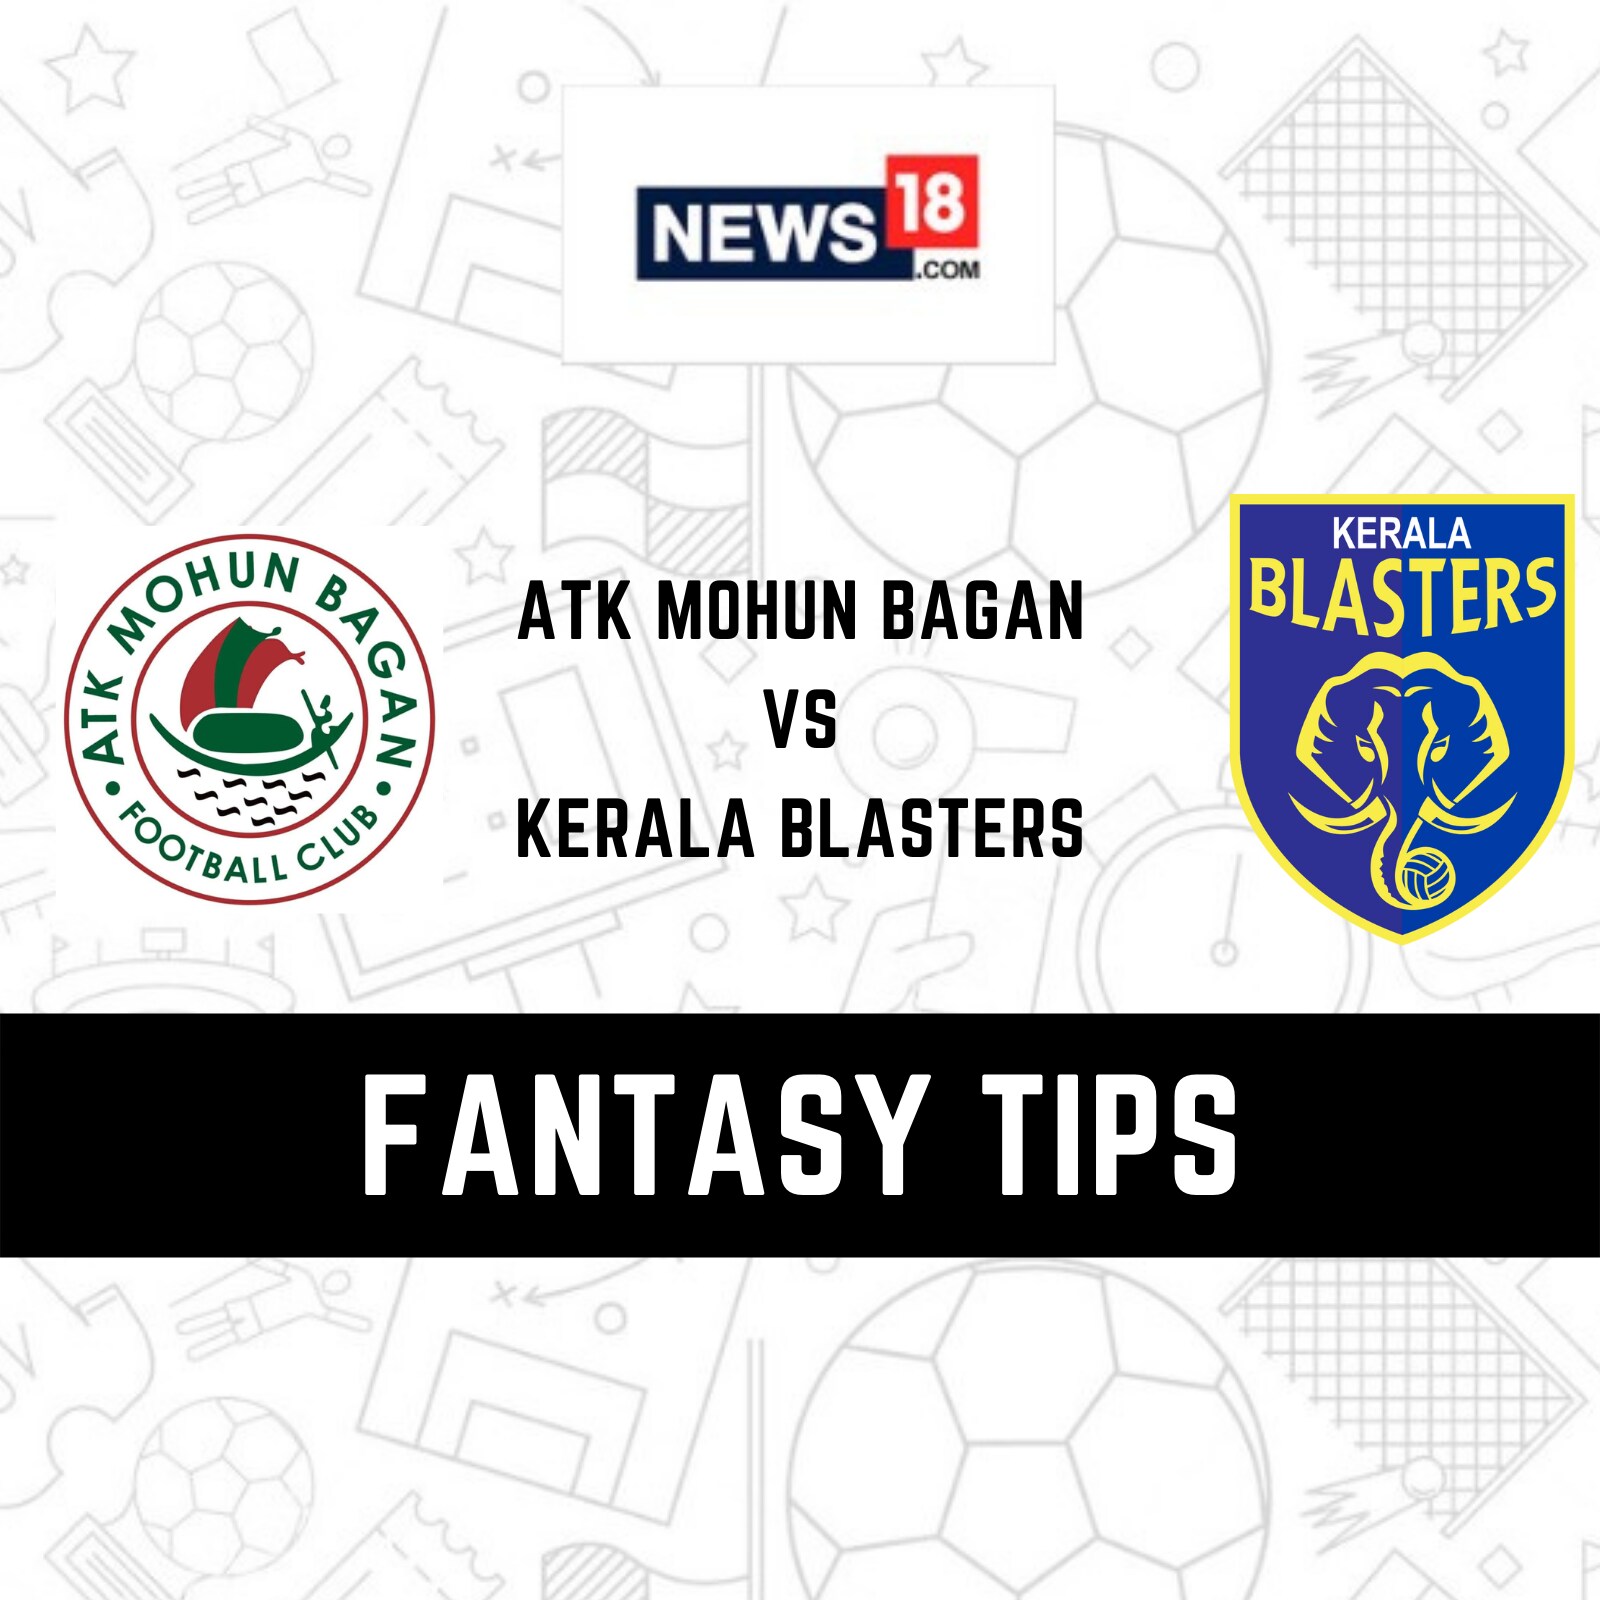 How to draw Kerala Blasters - ISL Team